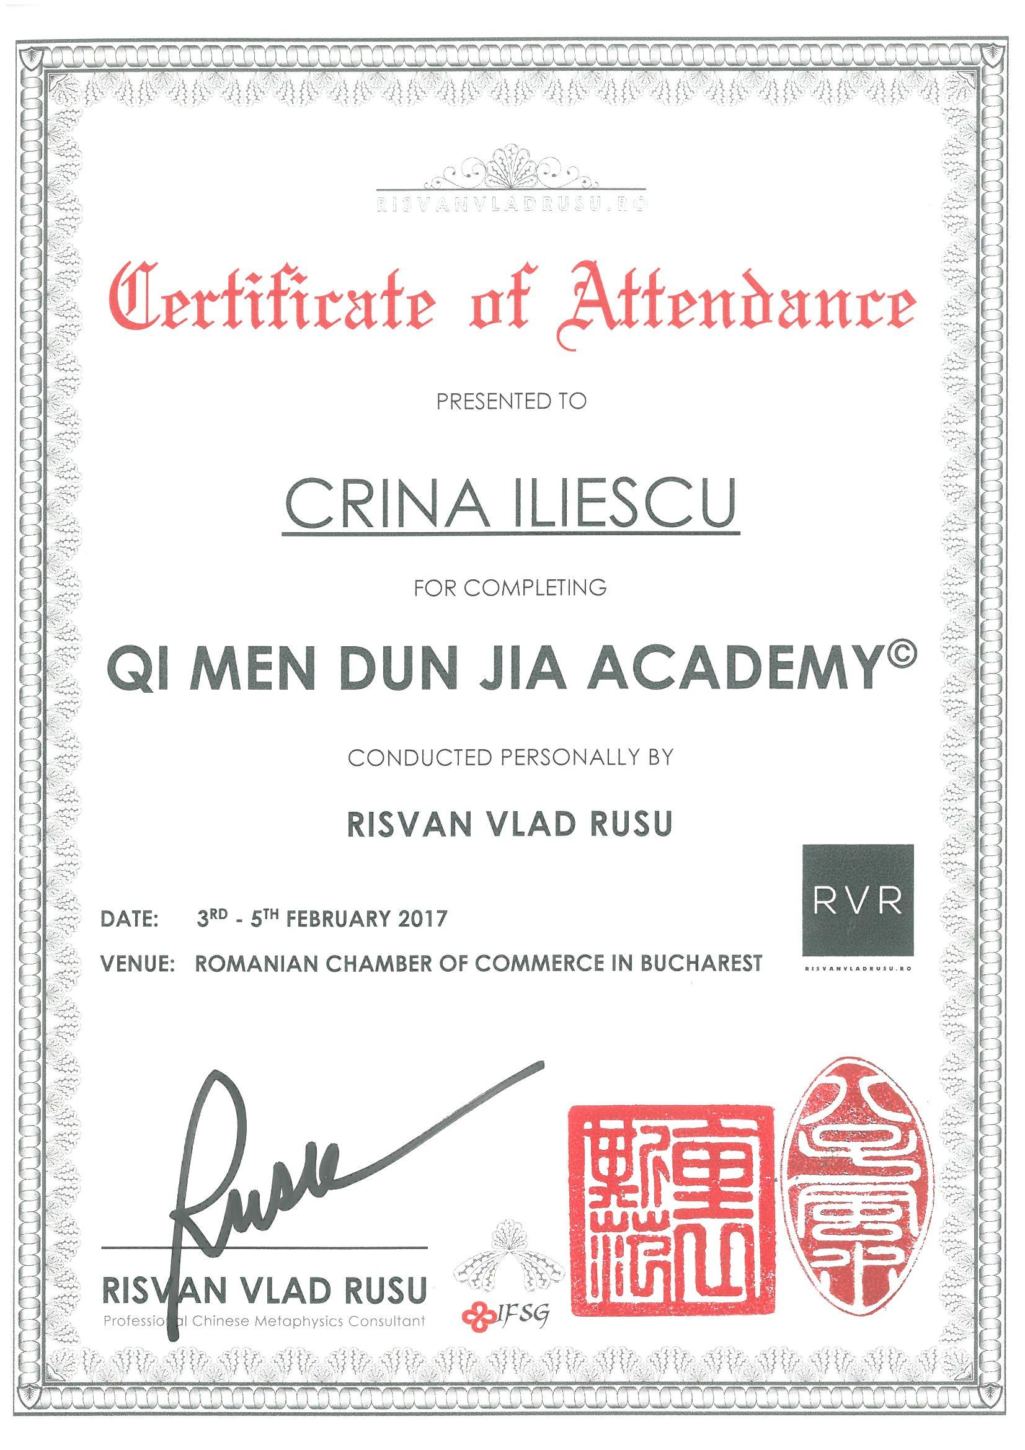 QMDJ_academy